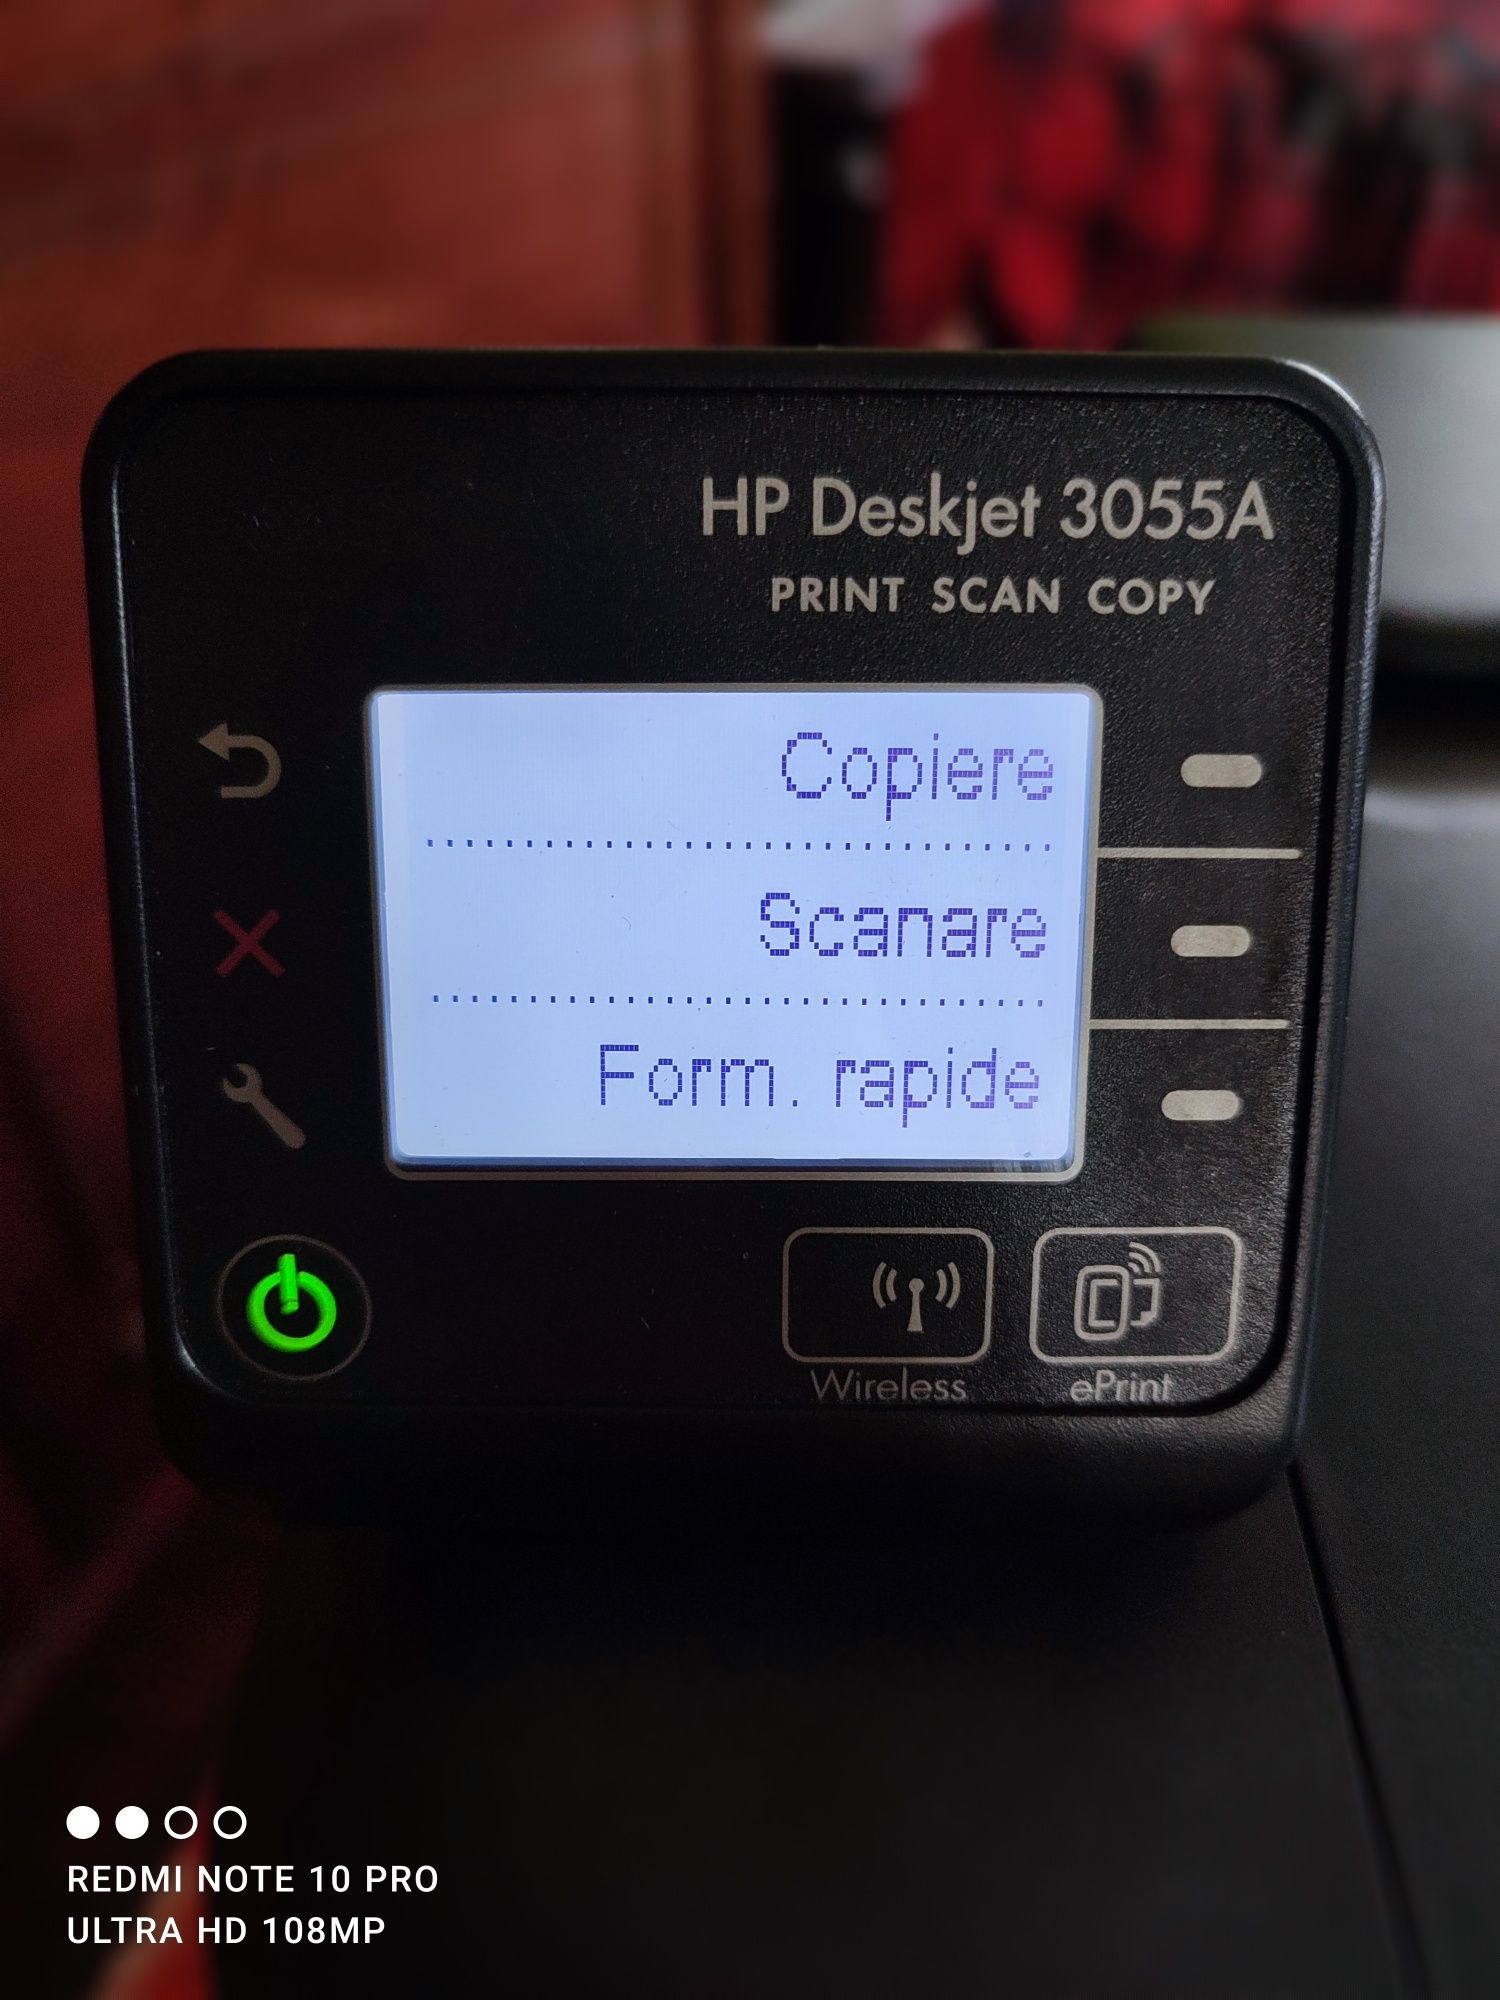 Vând imprimantă HP deskjet 3055A